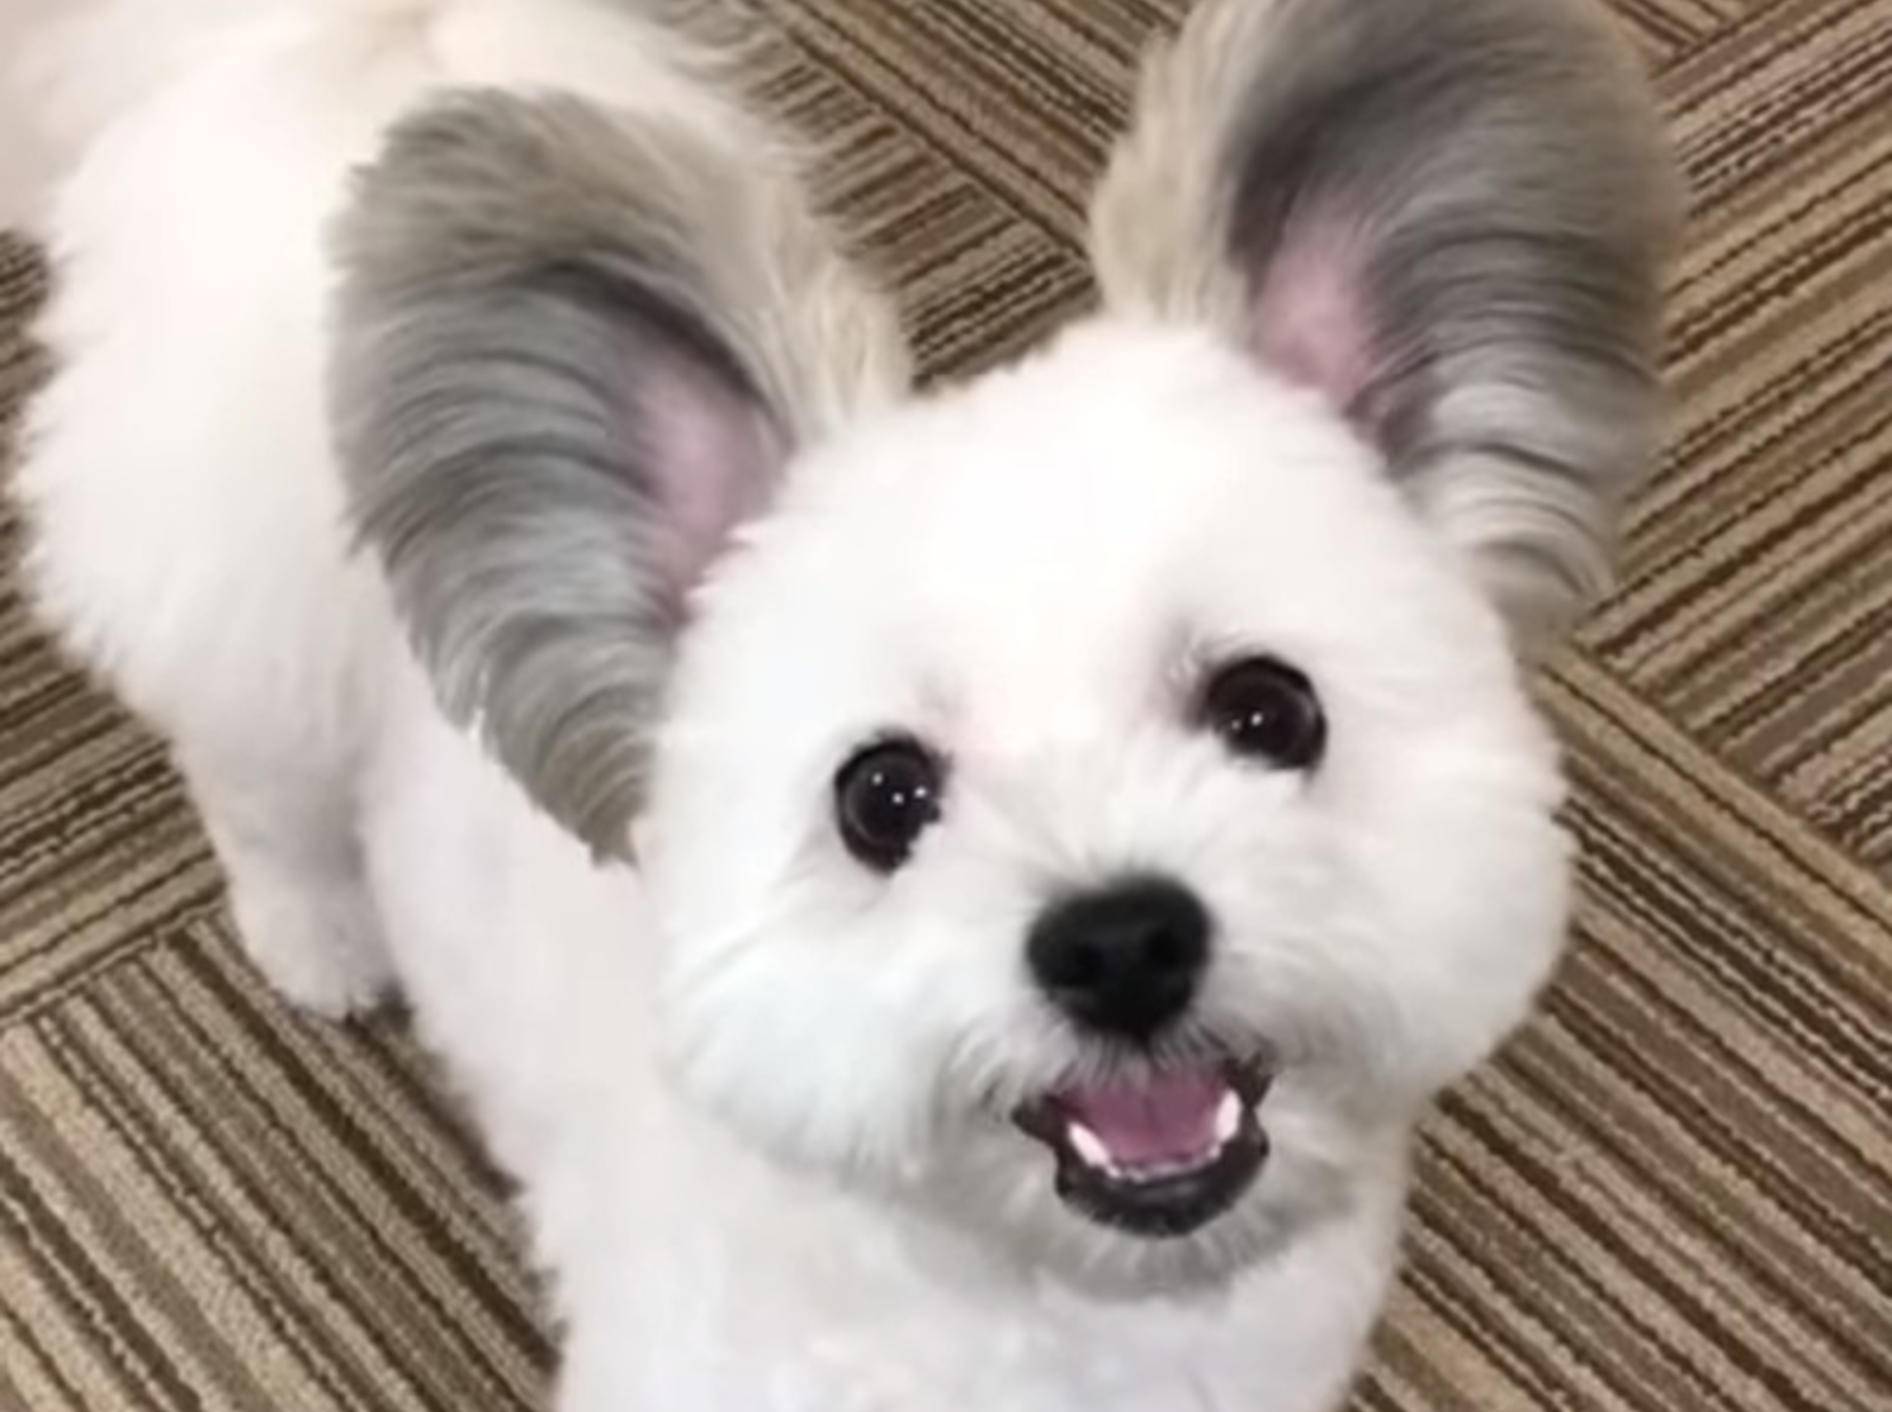 Ein Hund namens Goma begeistert mit seinen Ohren derzeit das Netz - Bild: YouTube / Strange incident